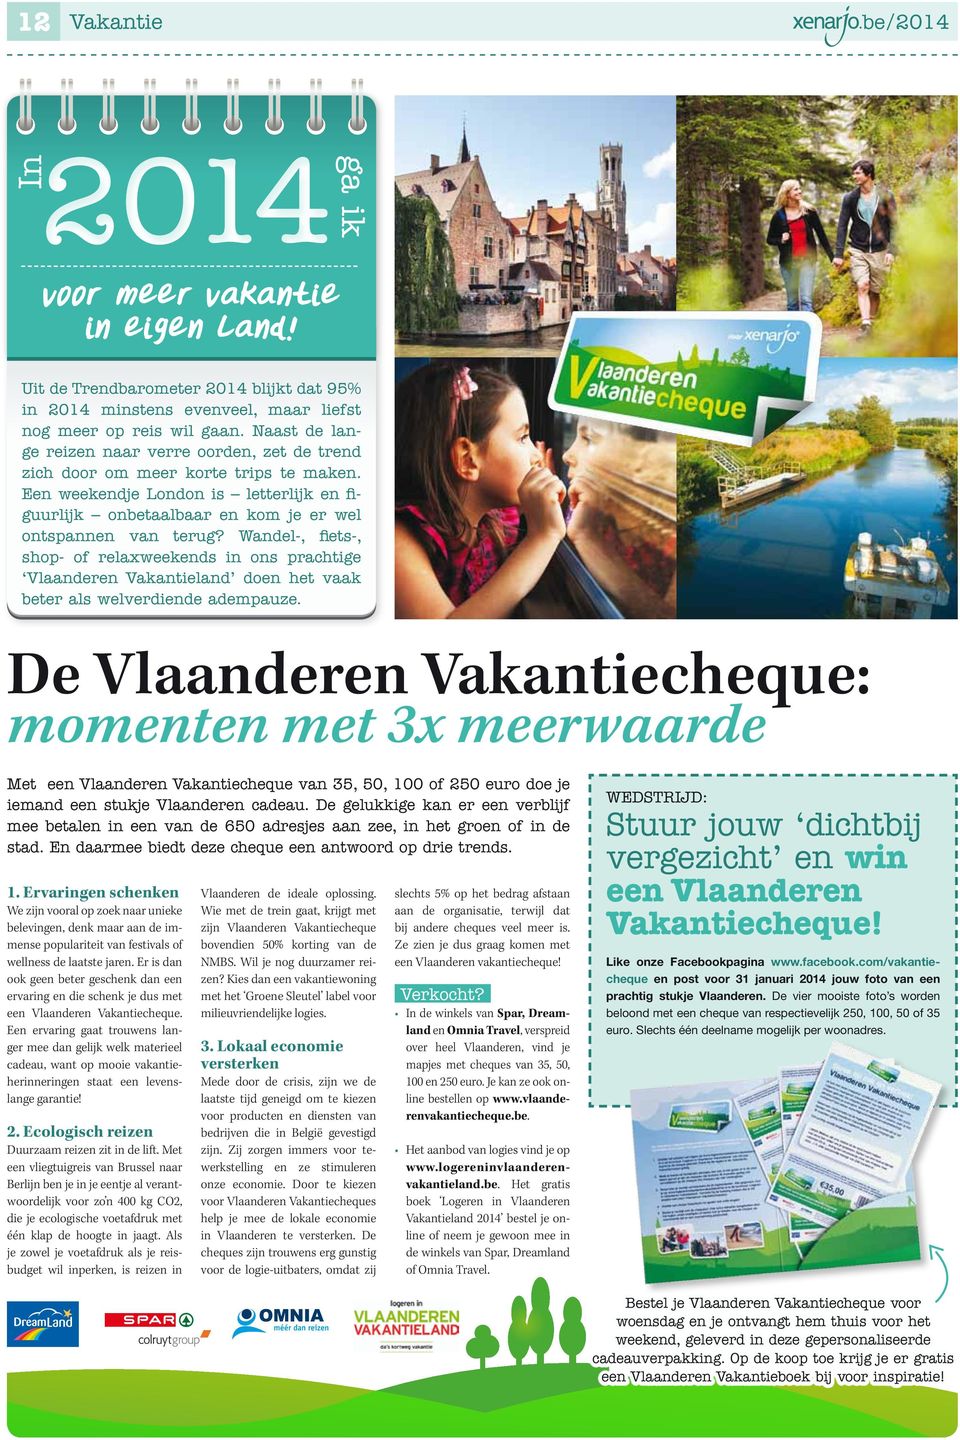 Wandel-, fiets-, shop- of relaxweekends in ons prachtige Vlaanderen Vakantieland doen het vaak beter als welverdiende adempauze.